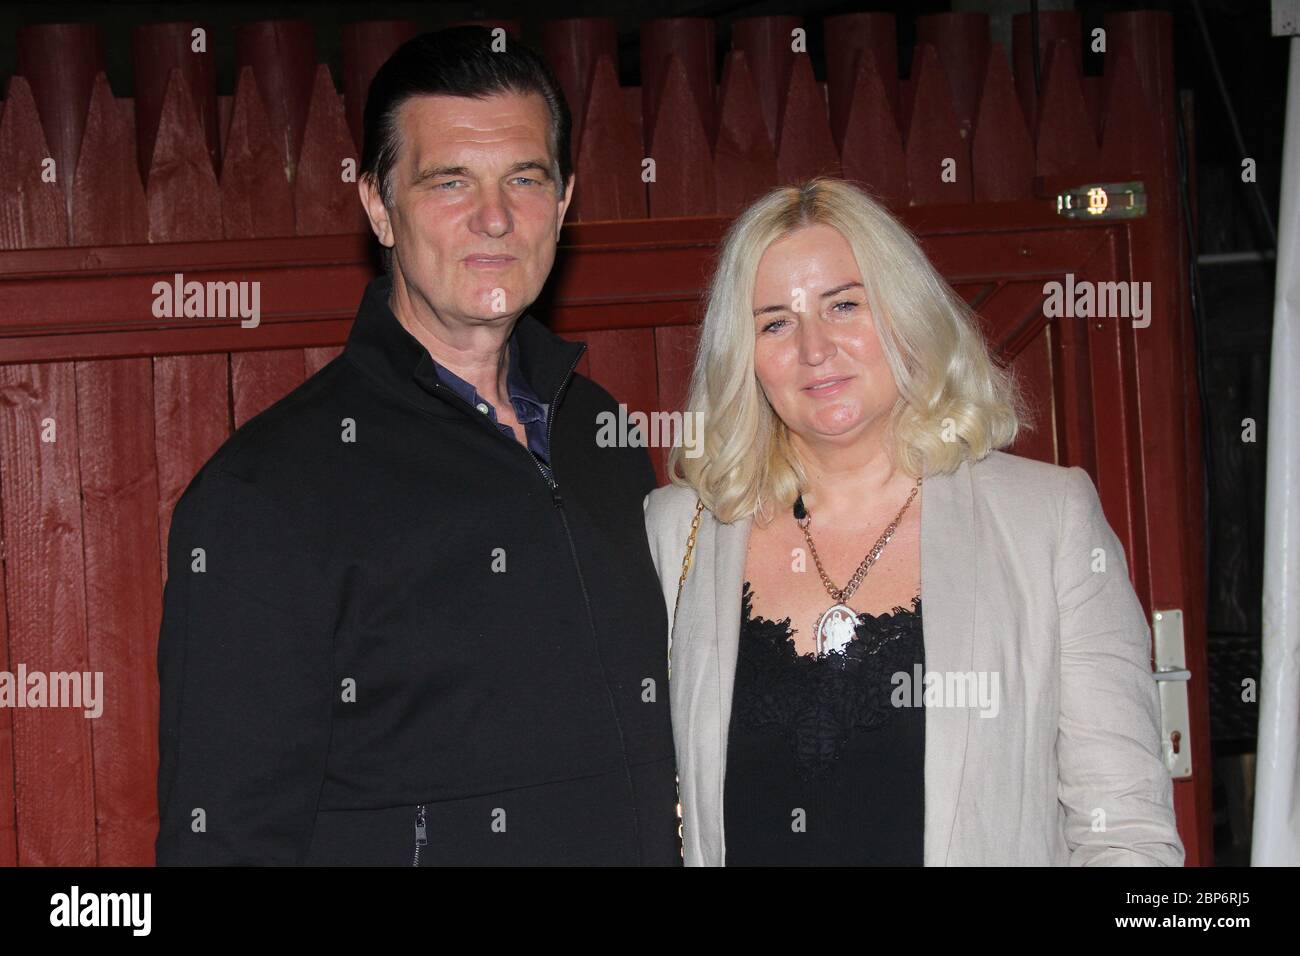 Heinz Anton & Elke Marolt,premiere Karl May Festspiele Bad Segeberg,29.06.2019 Stock Photo